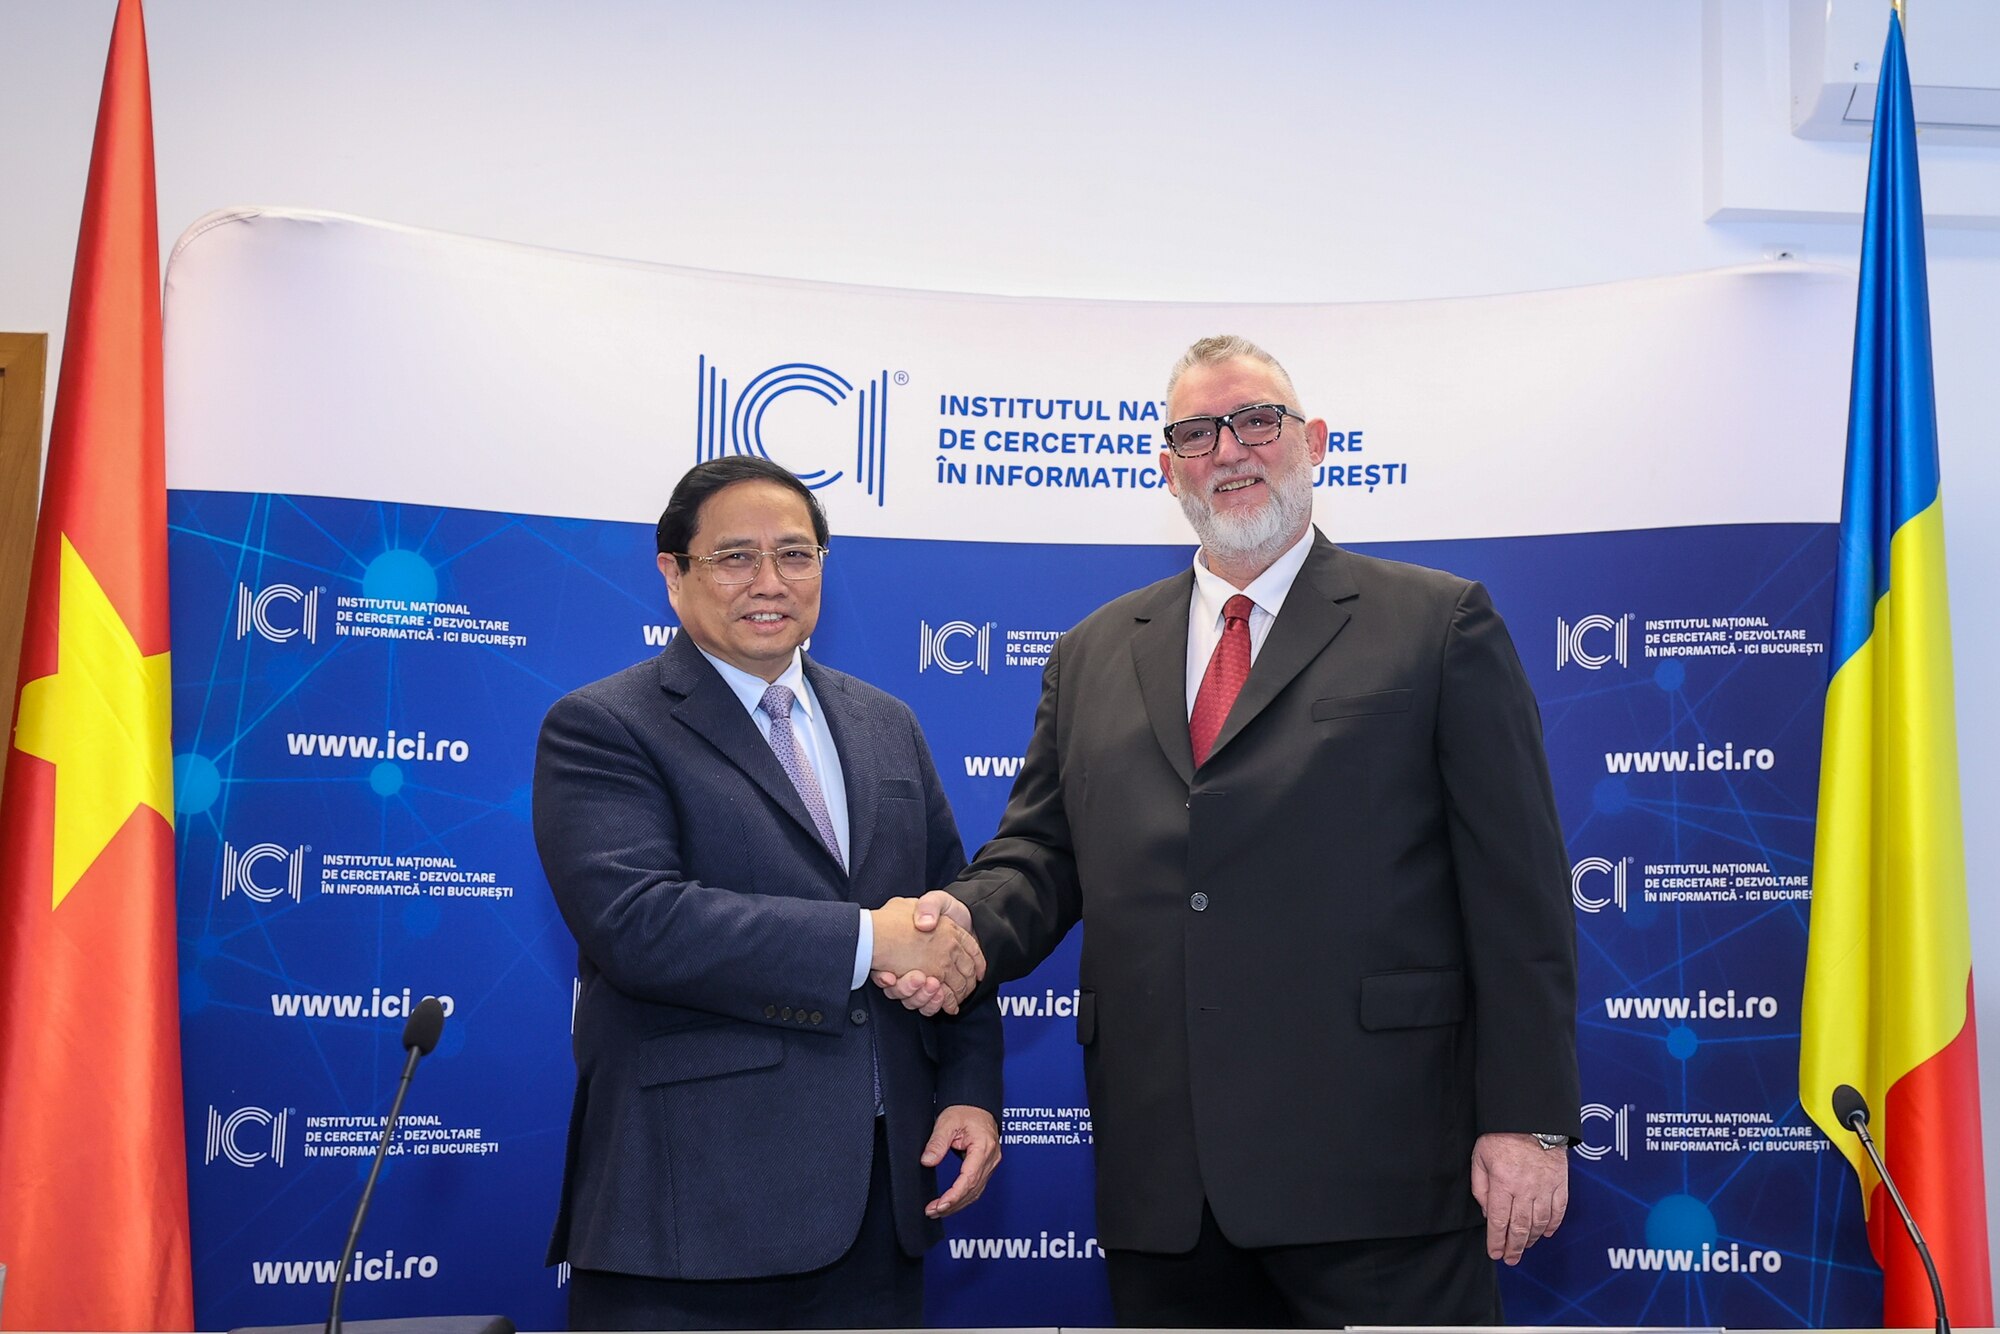 Thủ tướng thăm ICI, thúc đẩy hợp tác đổi mới sáng tạo Việt nam - Romania- Ảnh 1.